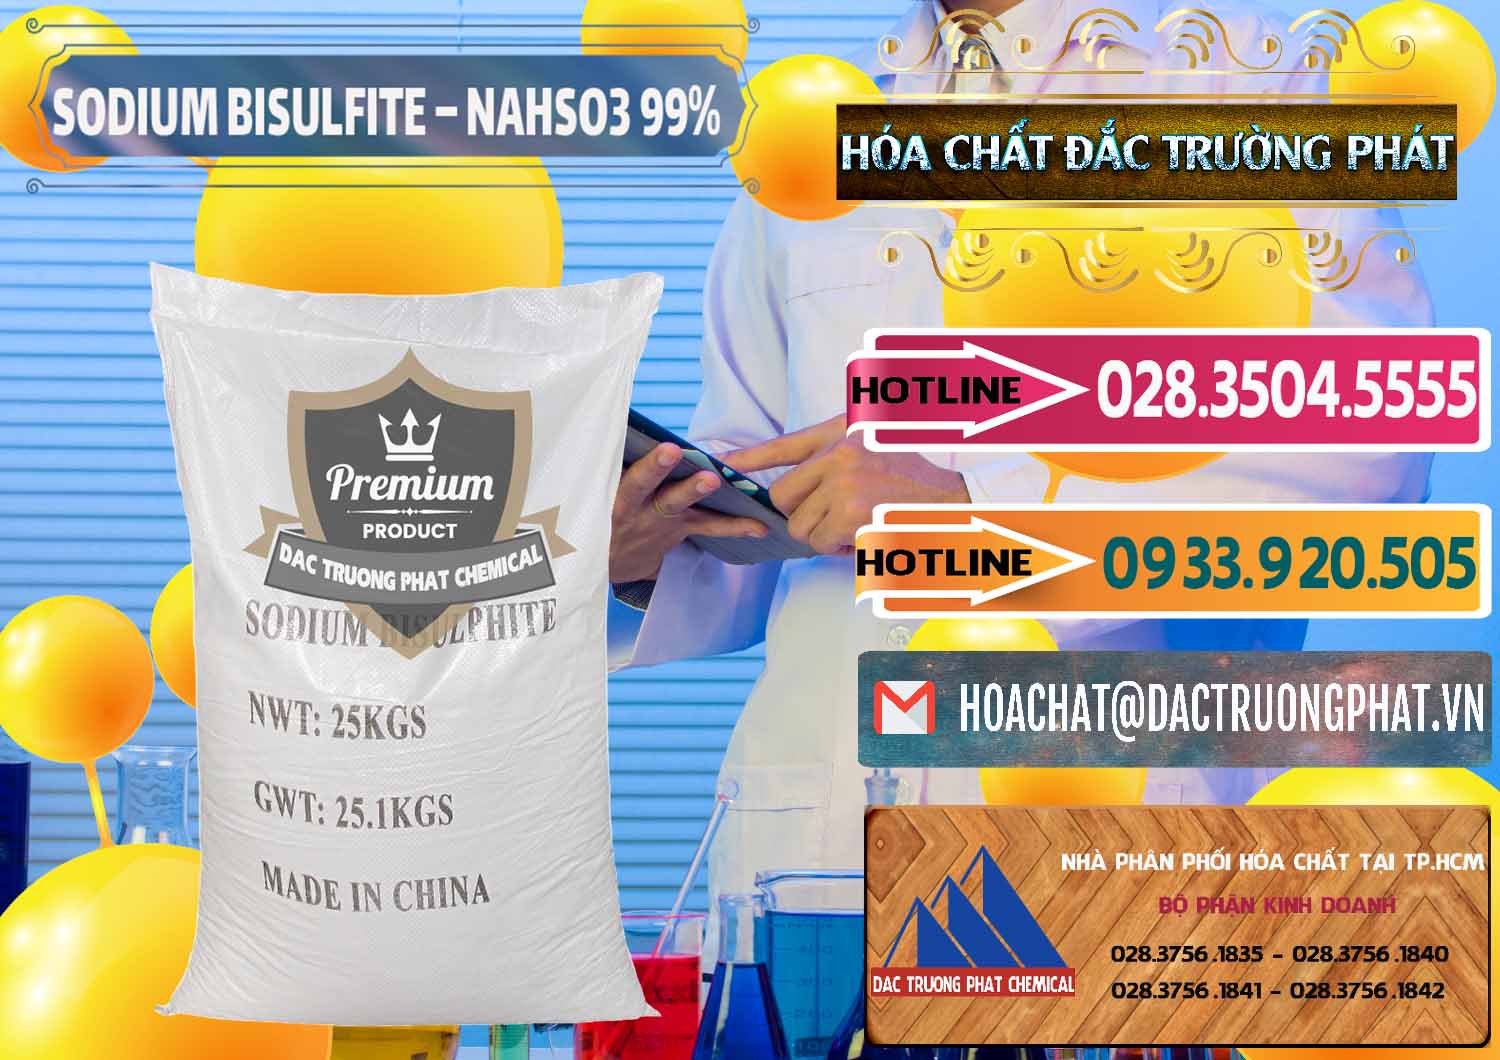 Nơi chuyên phân phối _ bán Sodium Bisulfite – NAHSO3 Trung Quốc China - 0140 - Cty chuyên cung cấp và bán hóa chất tại TP.HCM - dactruongphat.vn